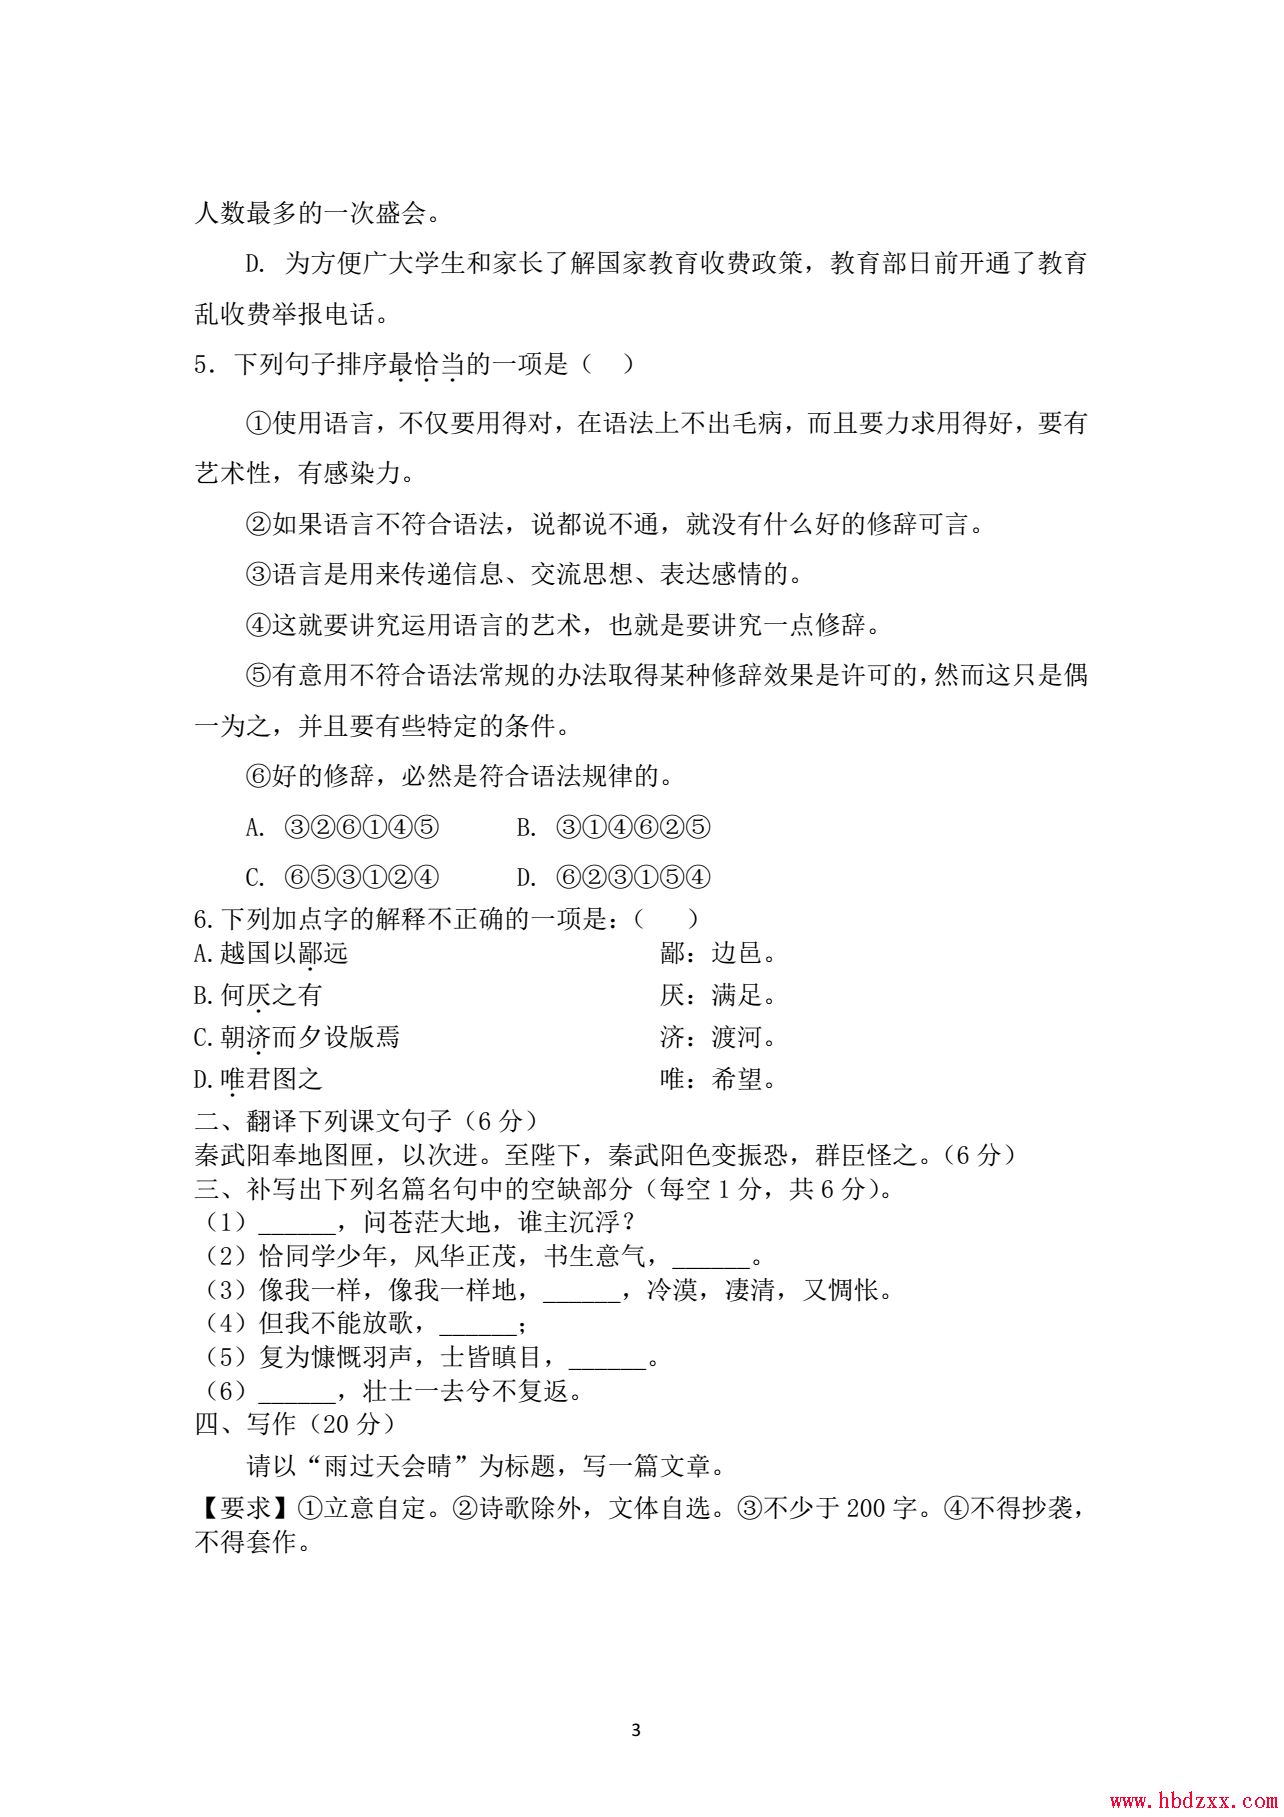 河北机电职业技术学院2012年单招语文试题 图2